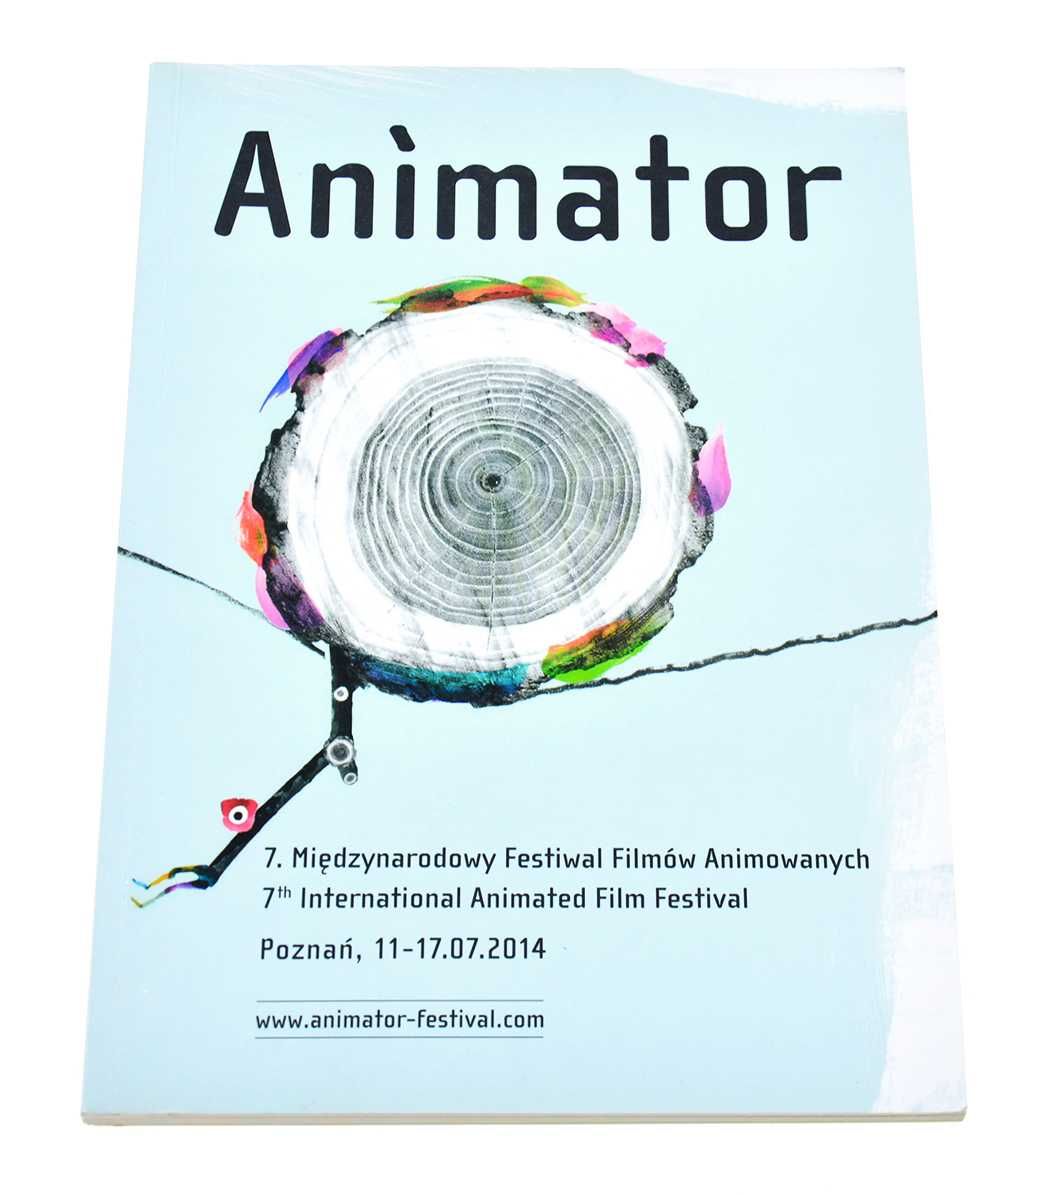 Animator 2014 - katalog festiwalu, Poznań, film animowany